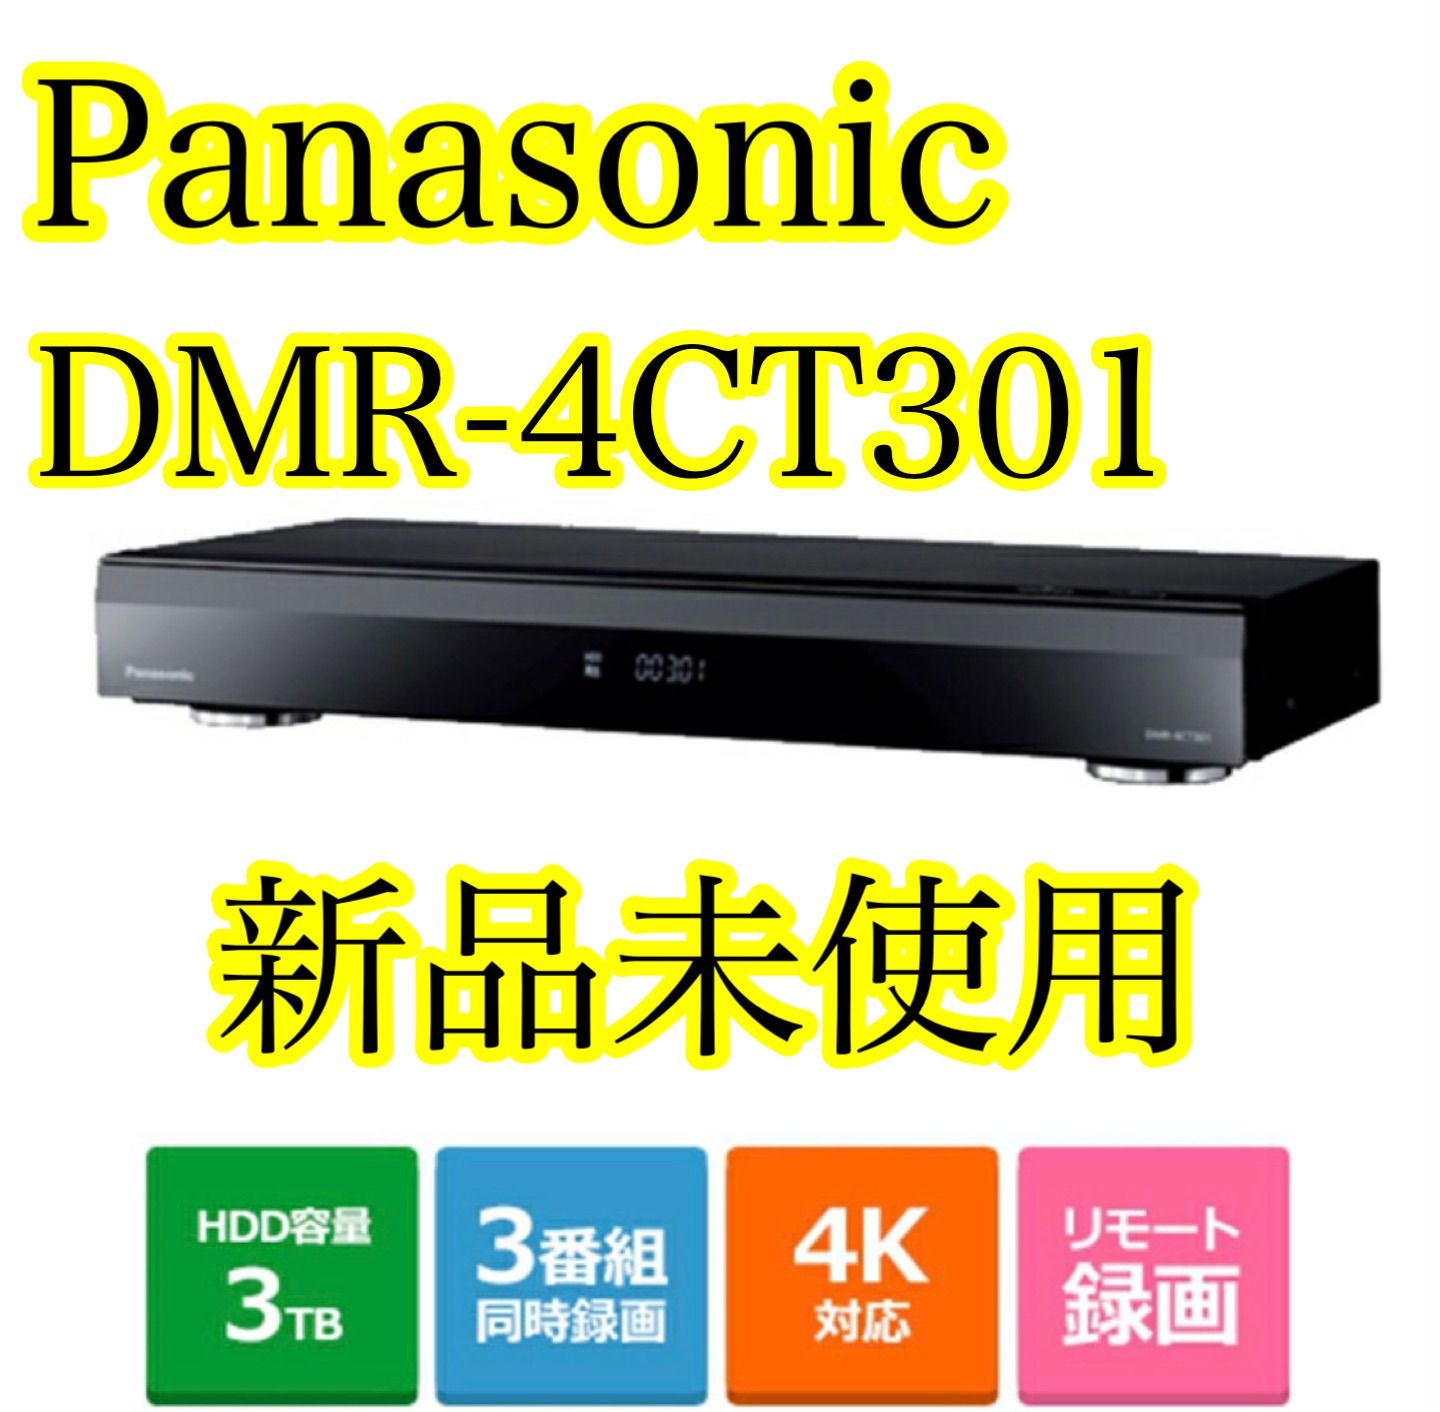 【新品】Panasonic 4Kブルーレイレコーダー DMR-4CT301